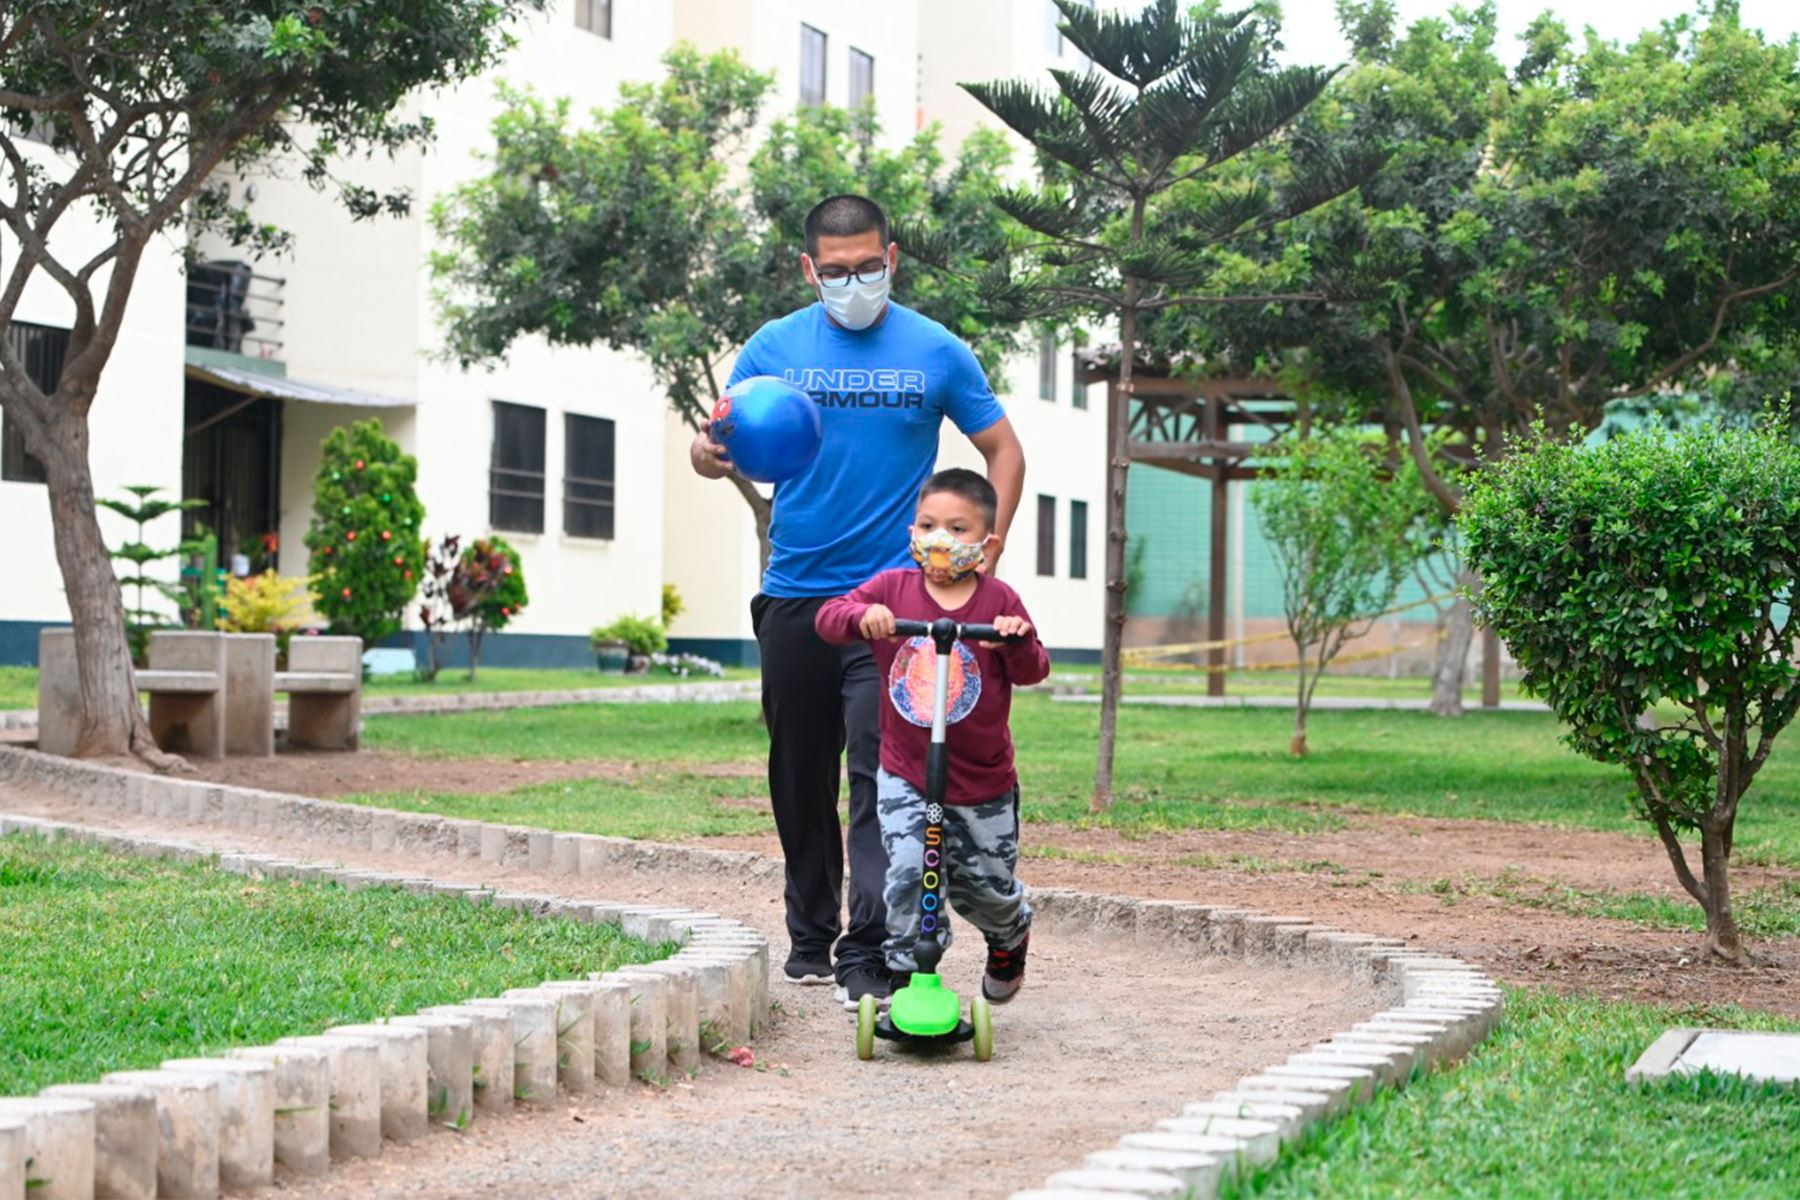 Padres deben extremar medidas de prevención durante salidas con niños menores de 12 años. Foto: ANDINA/Sisol